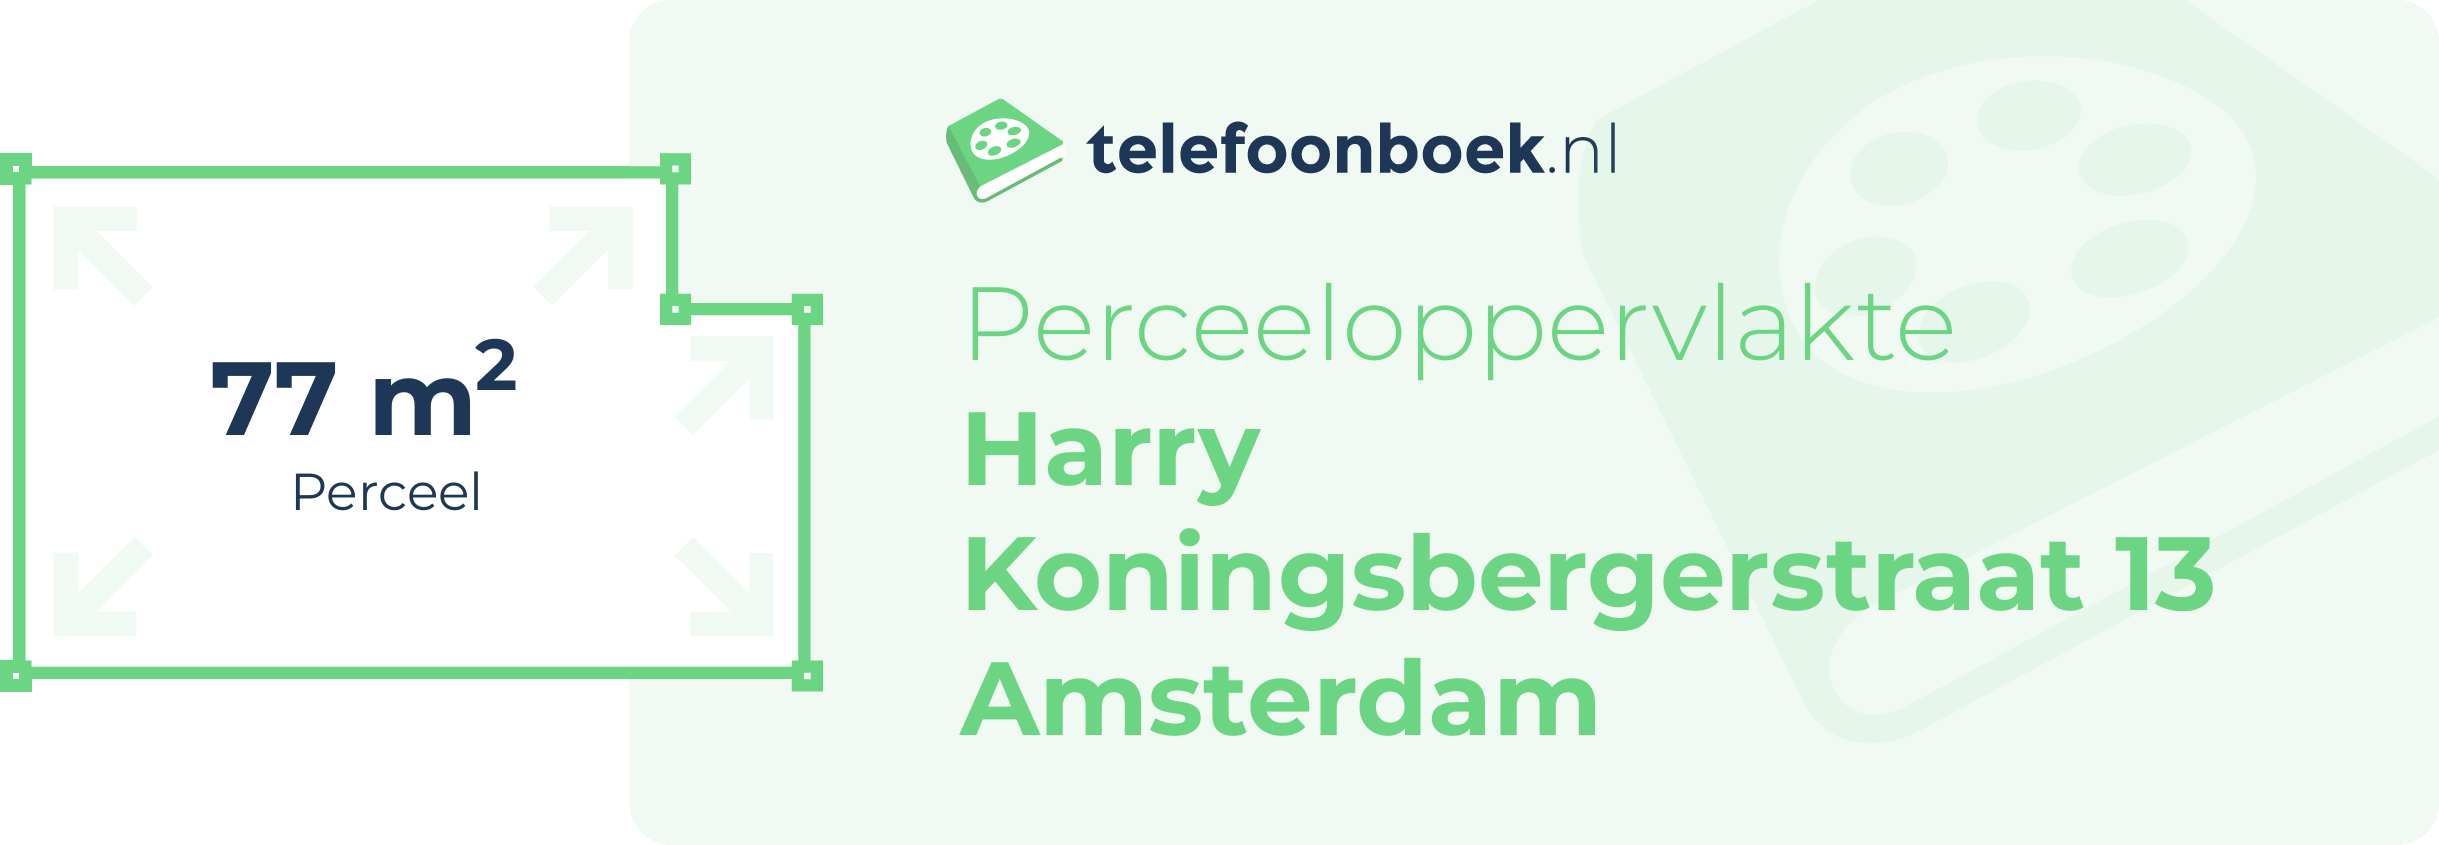 Perceeloppervlakte Harry Koningsbergerstraat 13 Amsterdam